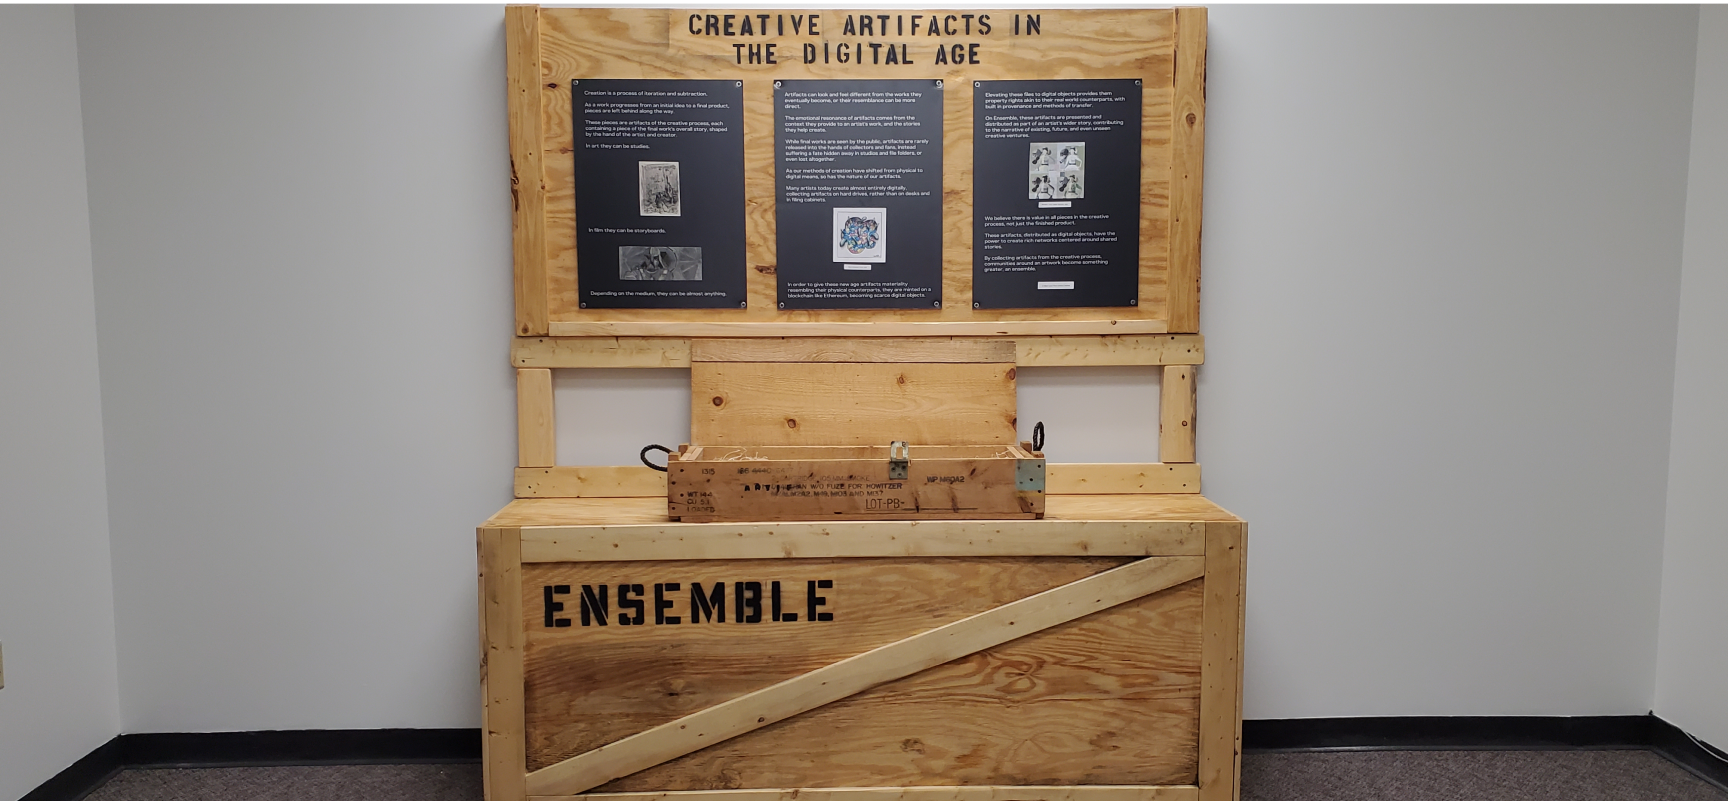 Ensemble Crate